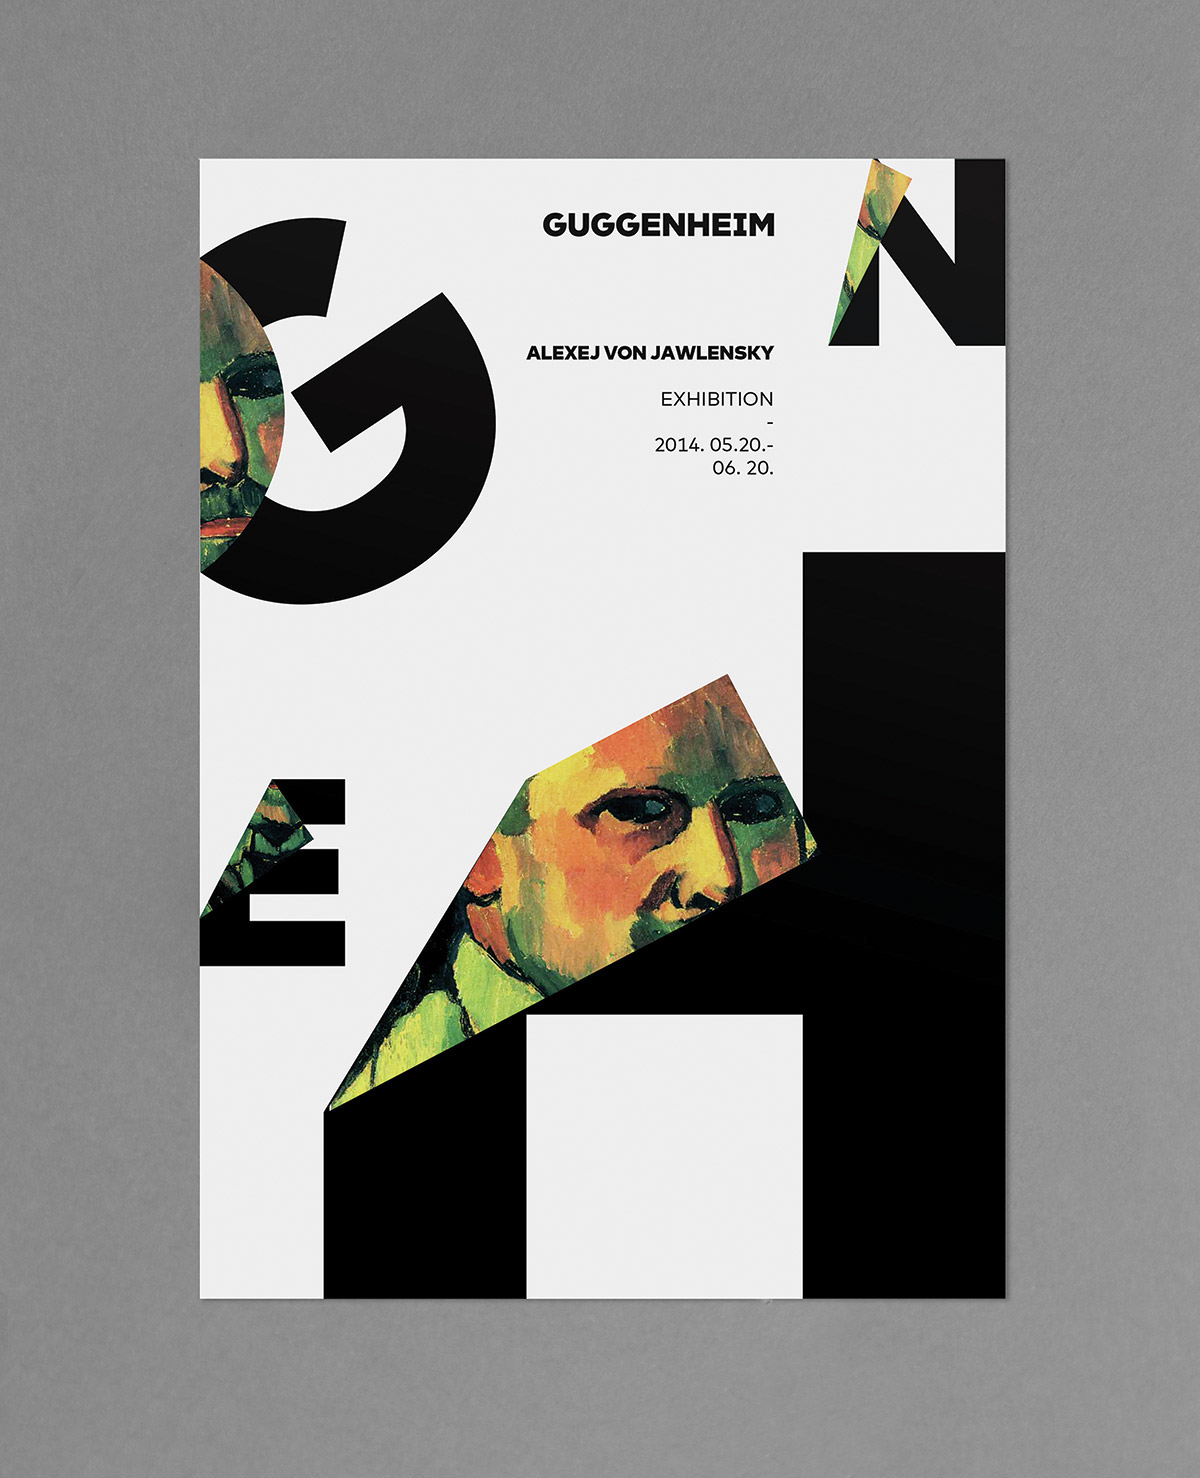 ff FontFont font type Typeface mark ff mark guggenheim museum Corporate Design art